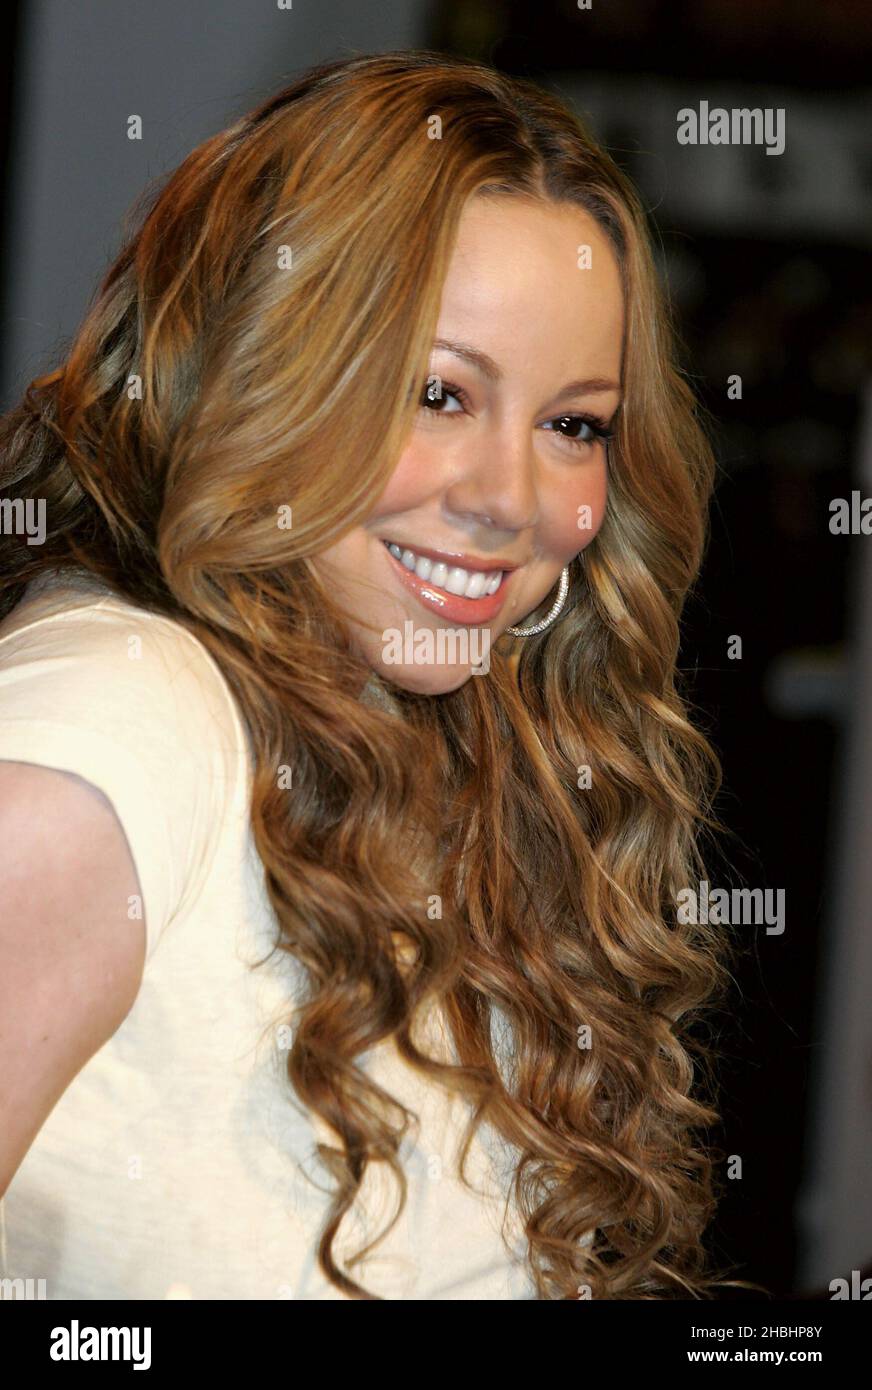 DIE US-Popsängerin Mariah Carey trifft Fans und signiert am 4. Dezember 2005 in London Kopien ihres preisgekrönten Albums „The Emancipation of Mimi: Ultra Platinum Edition“ in der HMV Oxford Street. Stockfoto